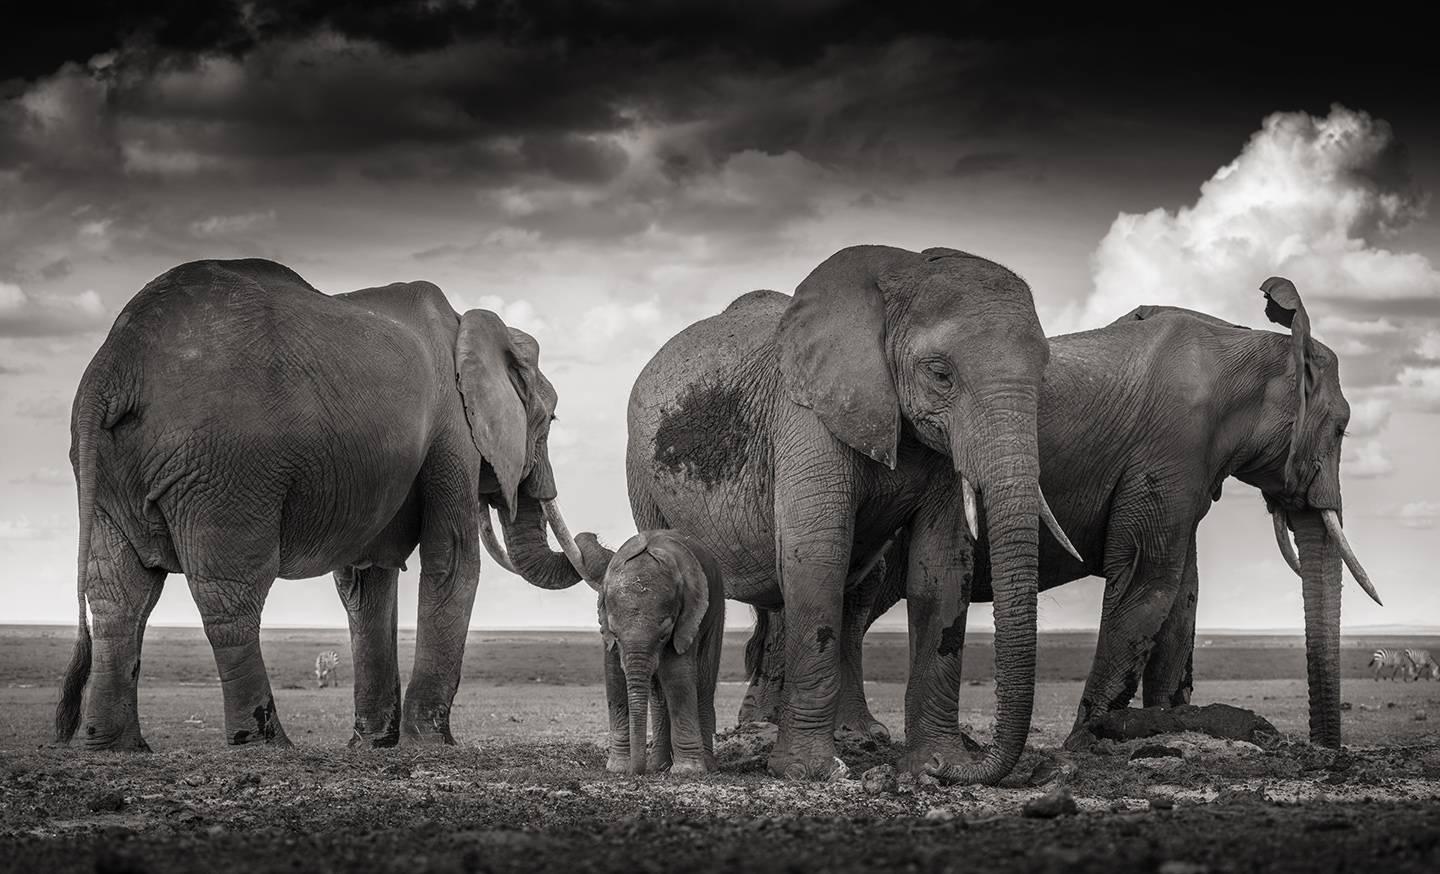 Joachim Schmeisser Black and White Photograph - Sleeping family, Elephant, black and white photography, wildlife